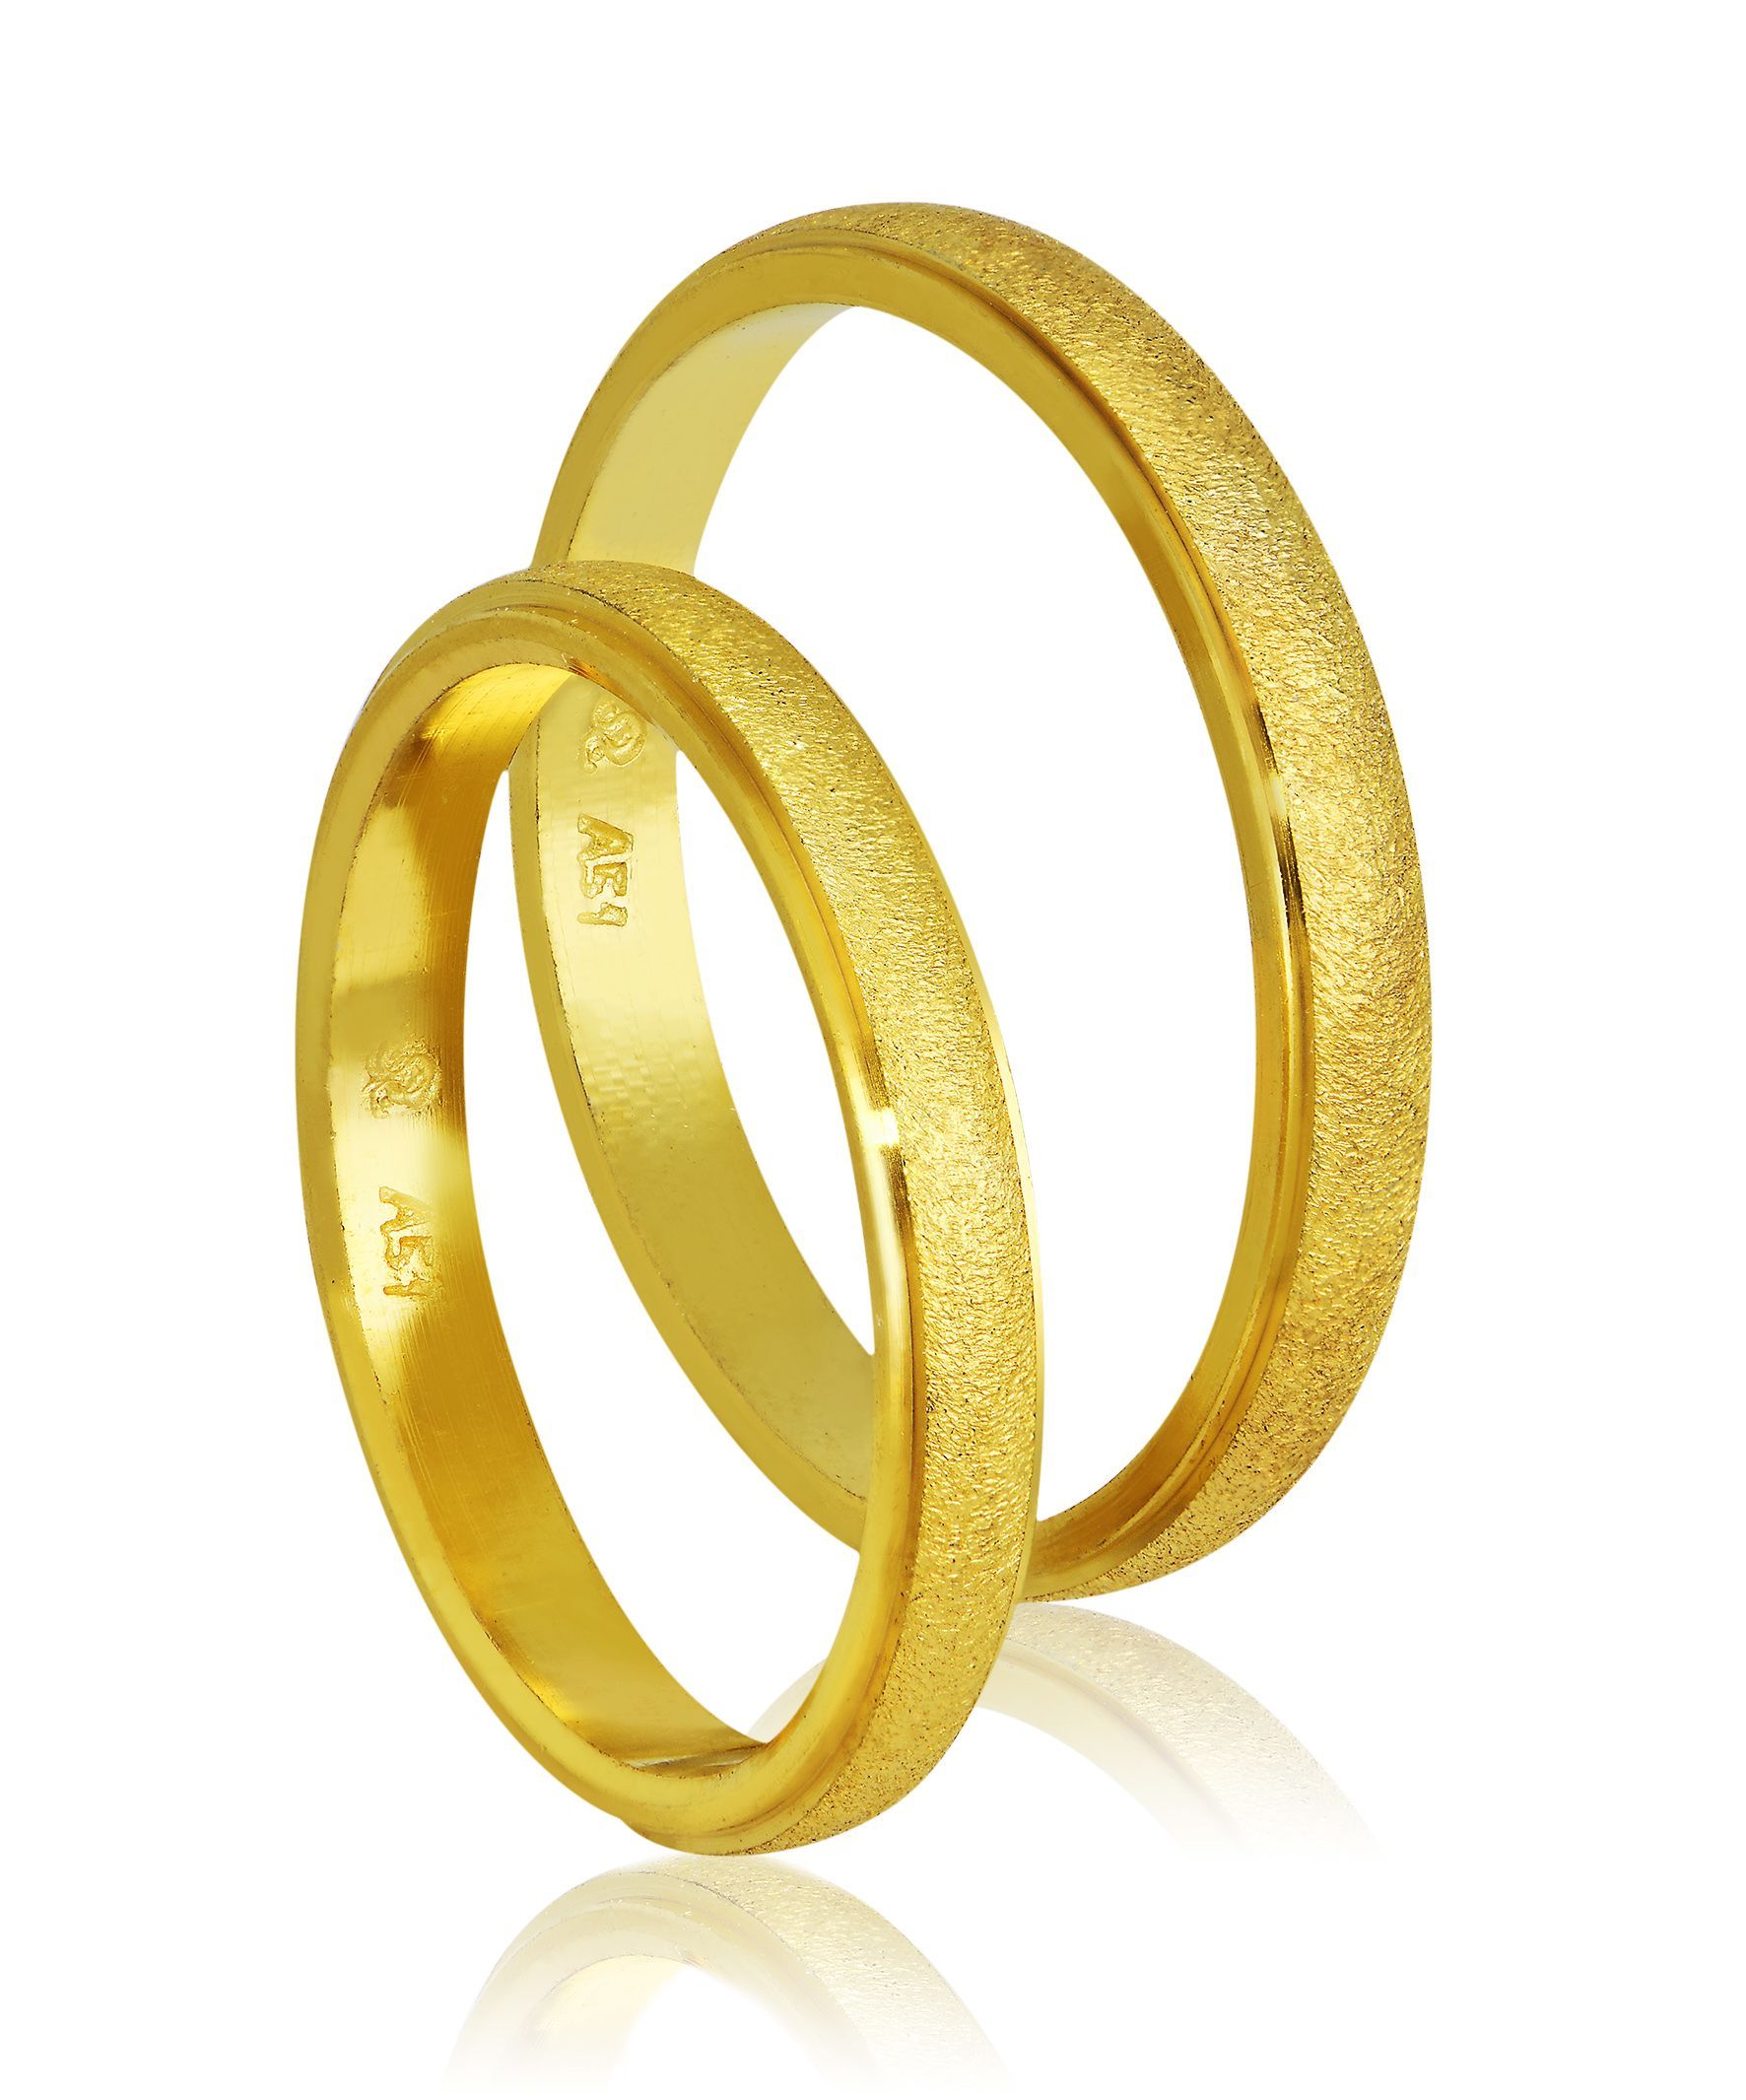 Golden wedding rings 3mm (code 402)